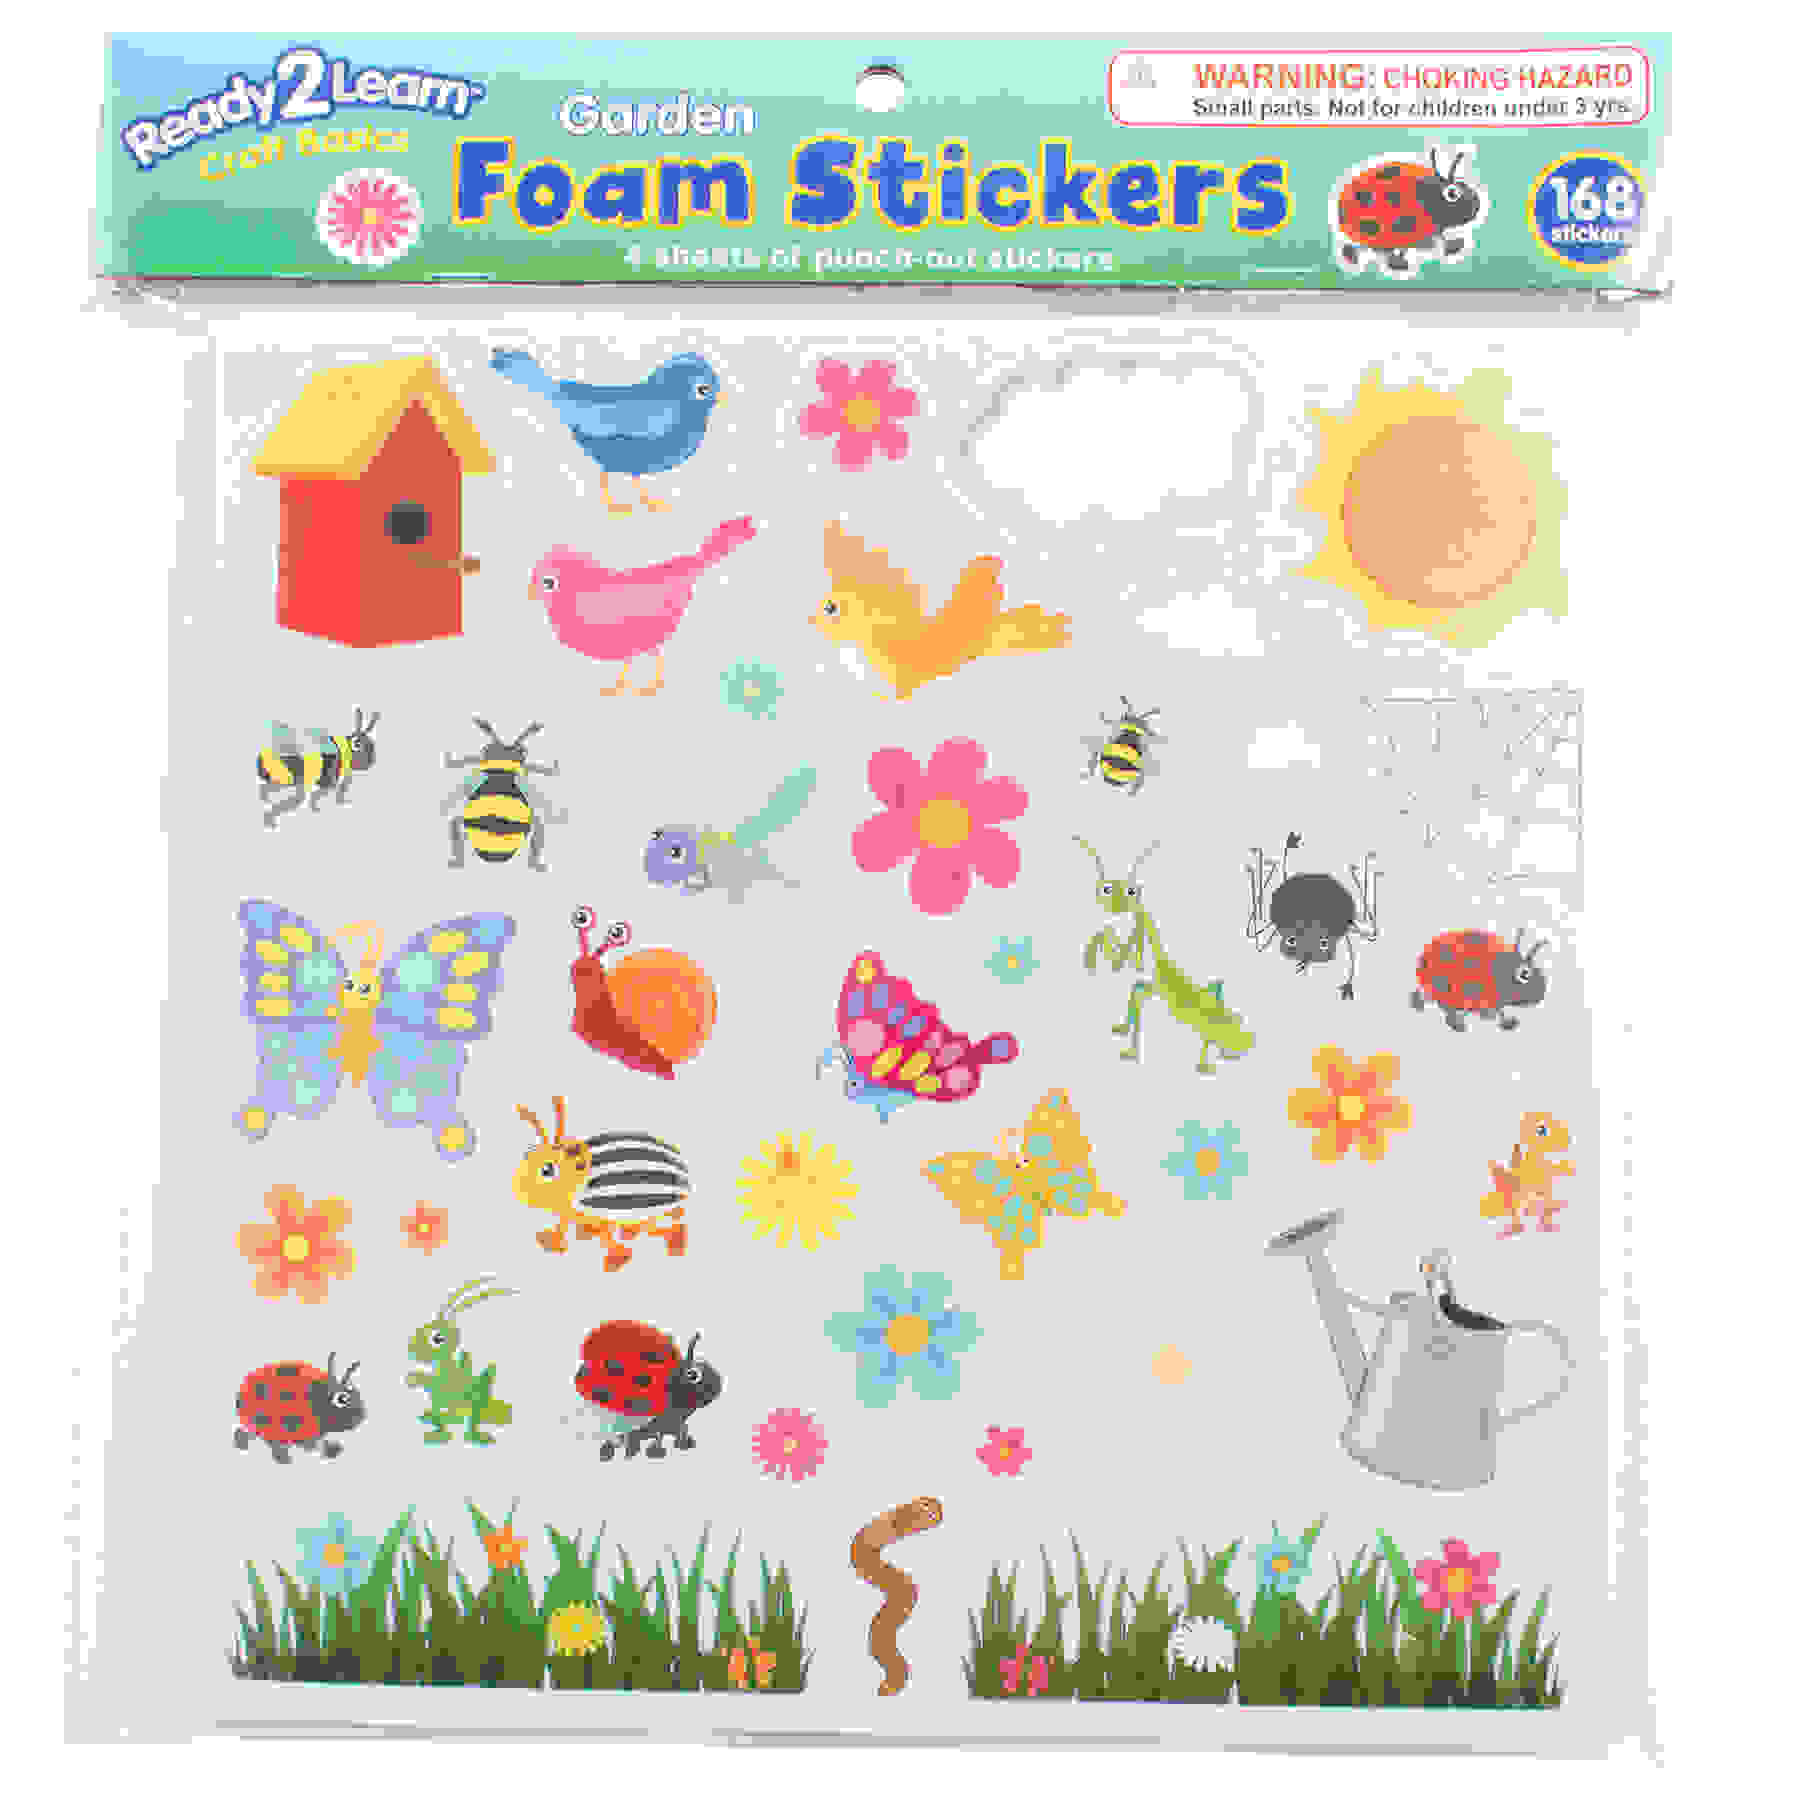 Foam Stickers, Garden, Pack of 168